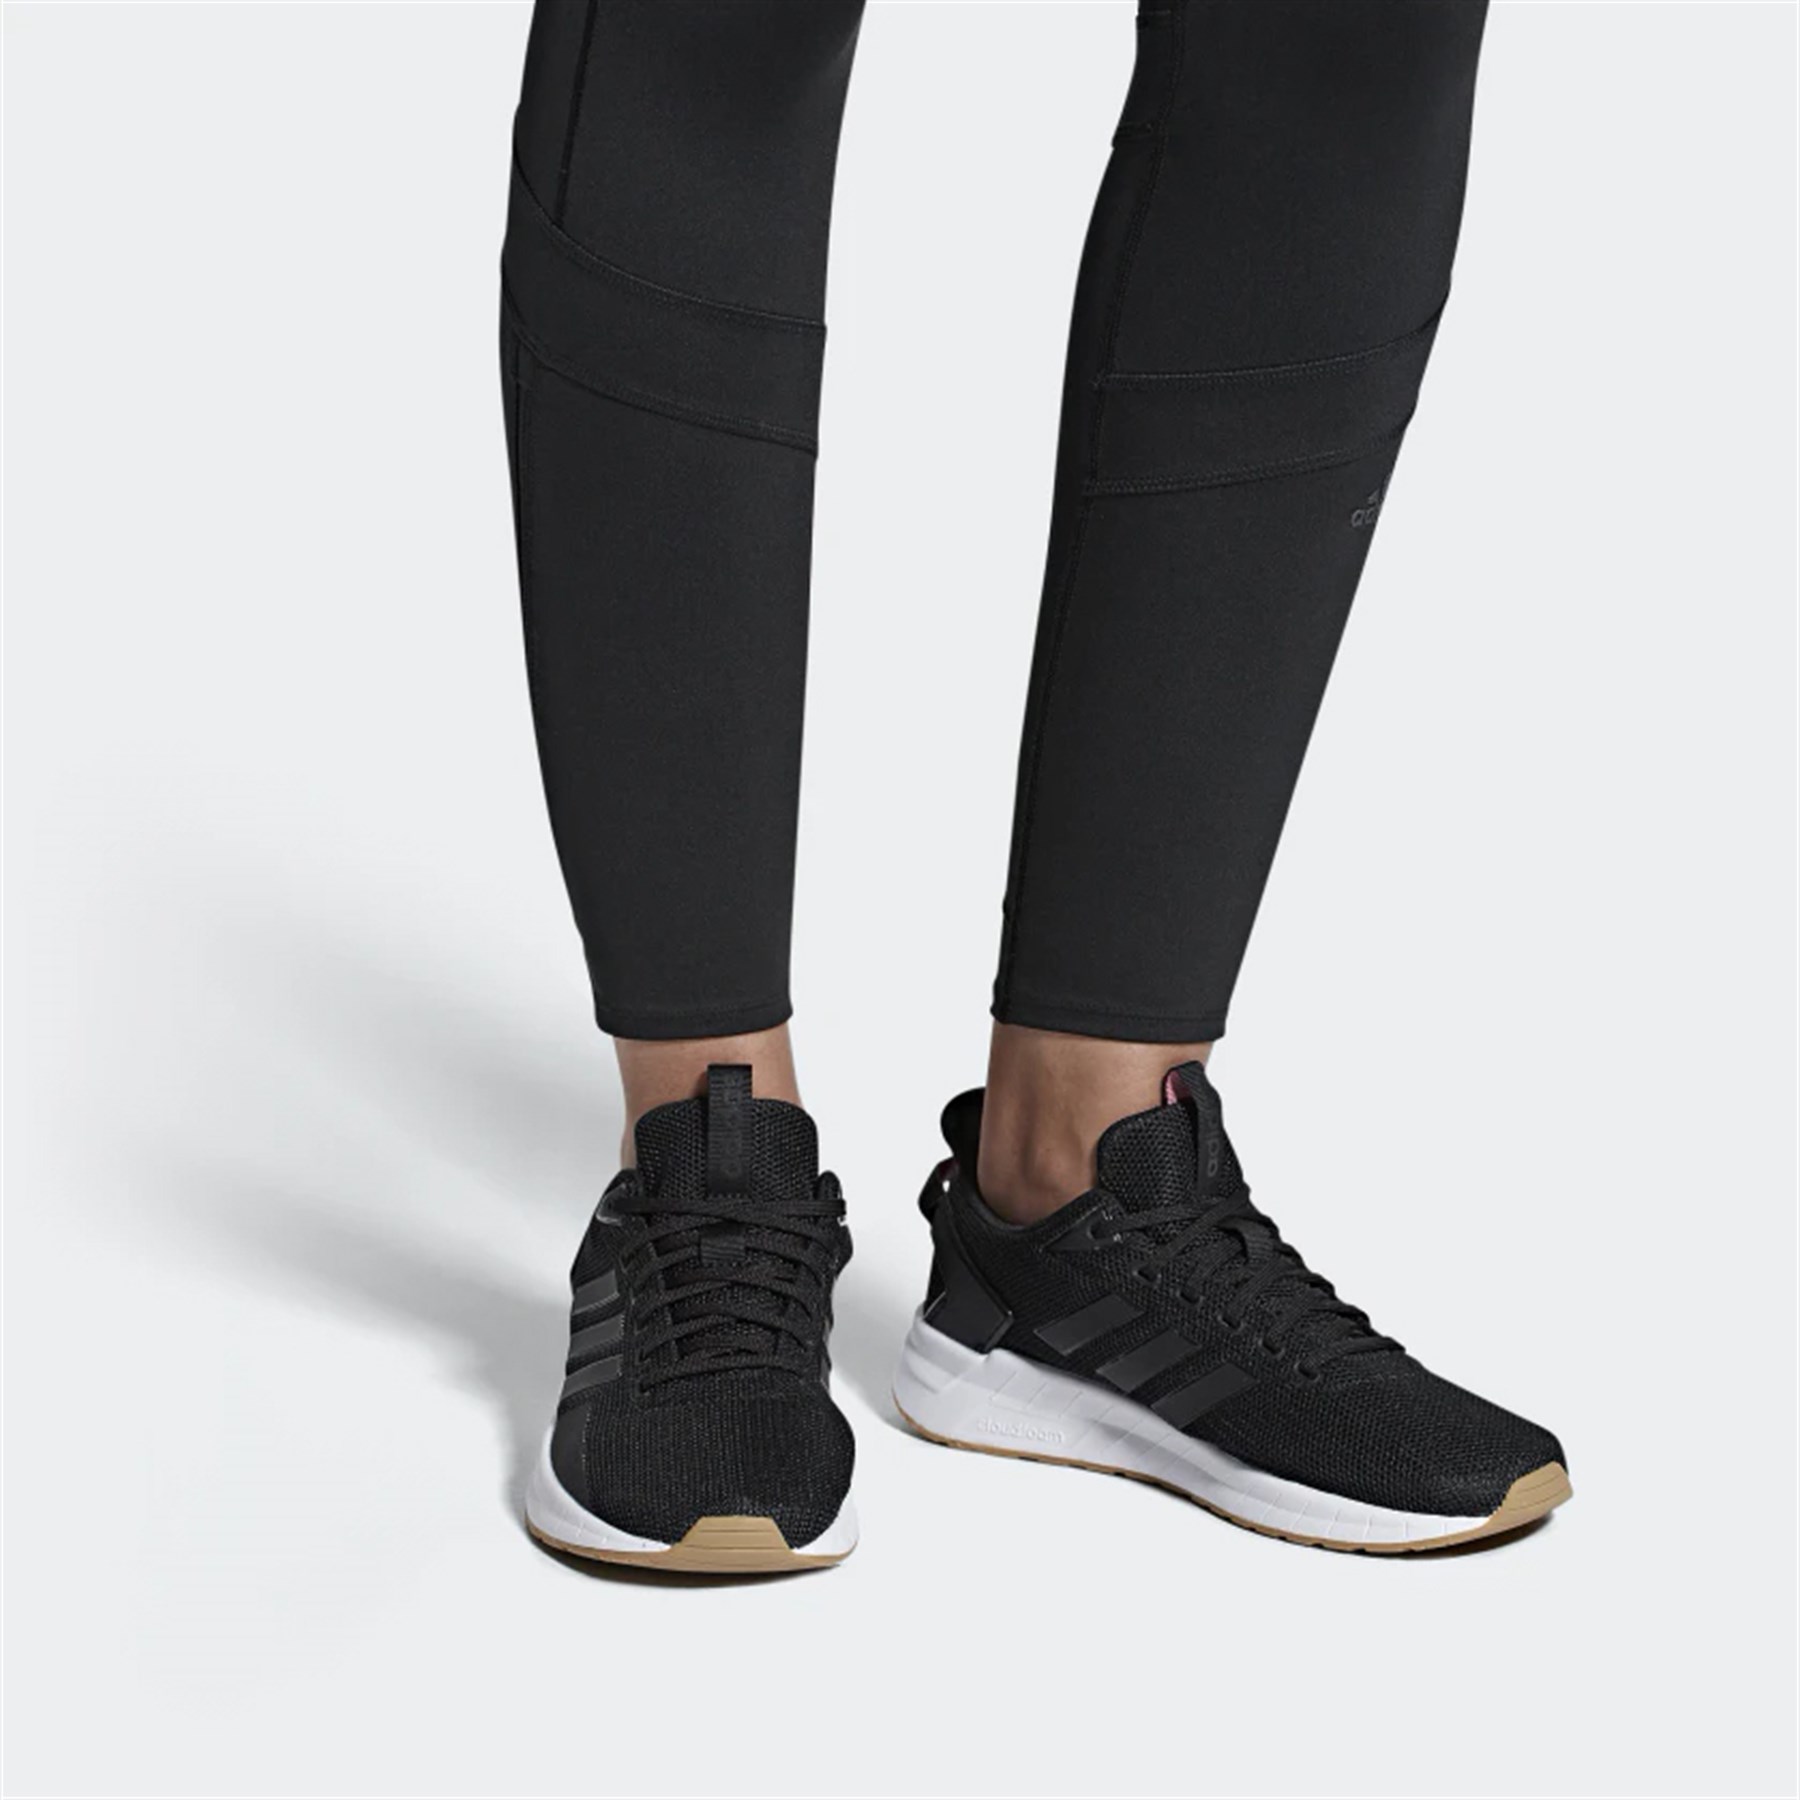 Adidas Kadın Koşu - Yürüyüş Spor Ayakkabı B44832 Questar Rıde